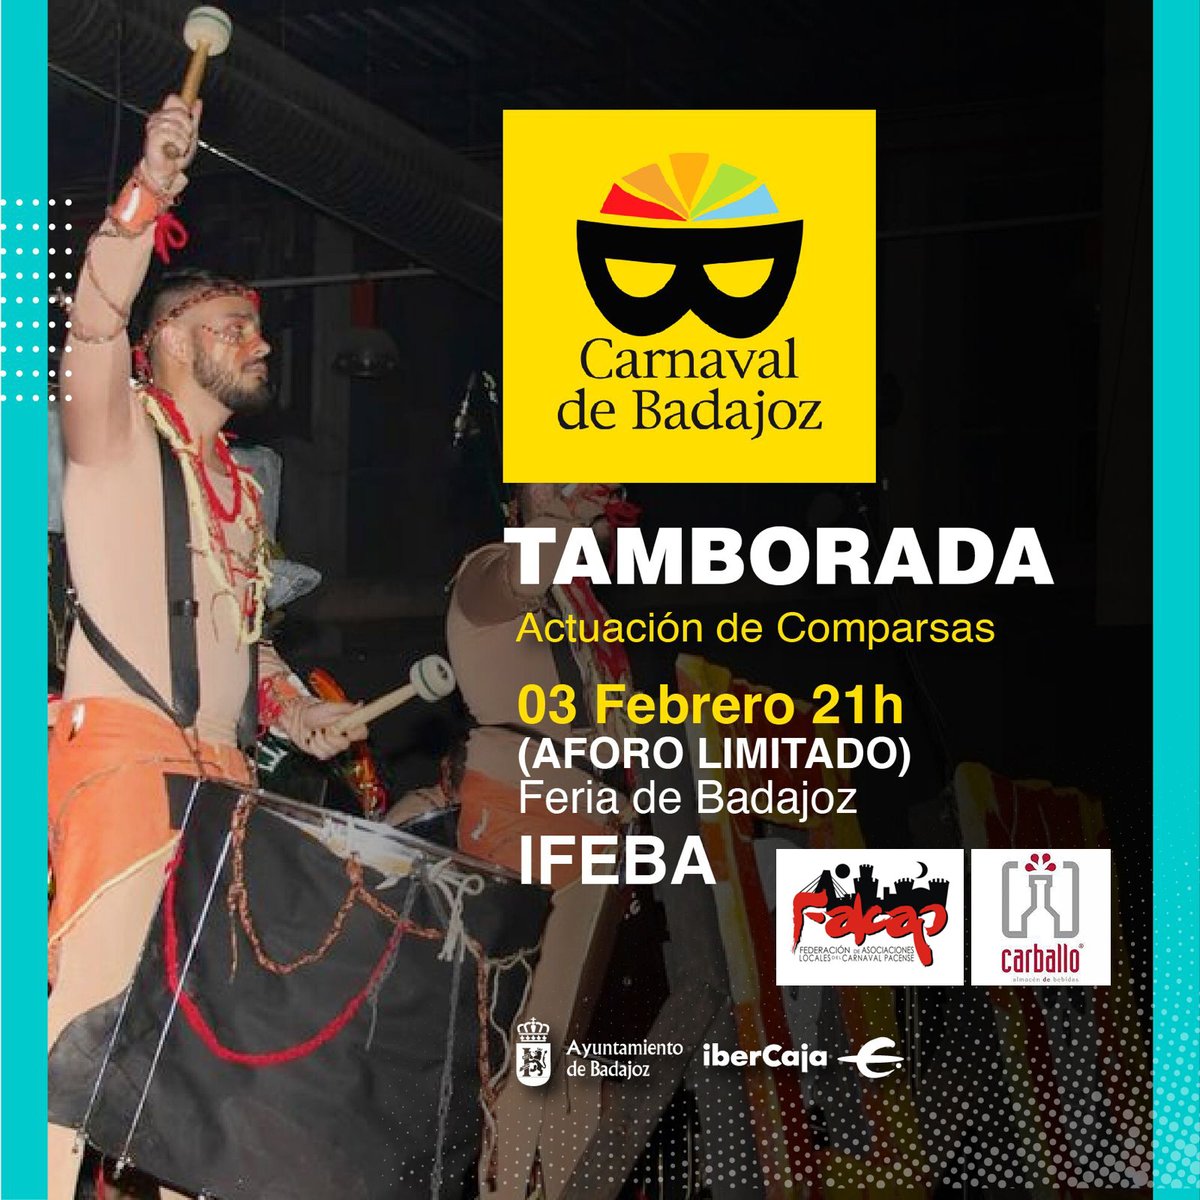 Vive la #tamborada del #carnavaldebadajoz en @feriabadajoz  @FalcapBadajoz 

📅 3 de febrero
🕔 21:00 h.
📍 Feria de Badajoz IFEBA

carnavaldebadajoz.org/evento/tambora…